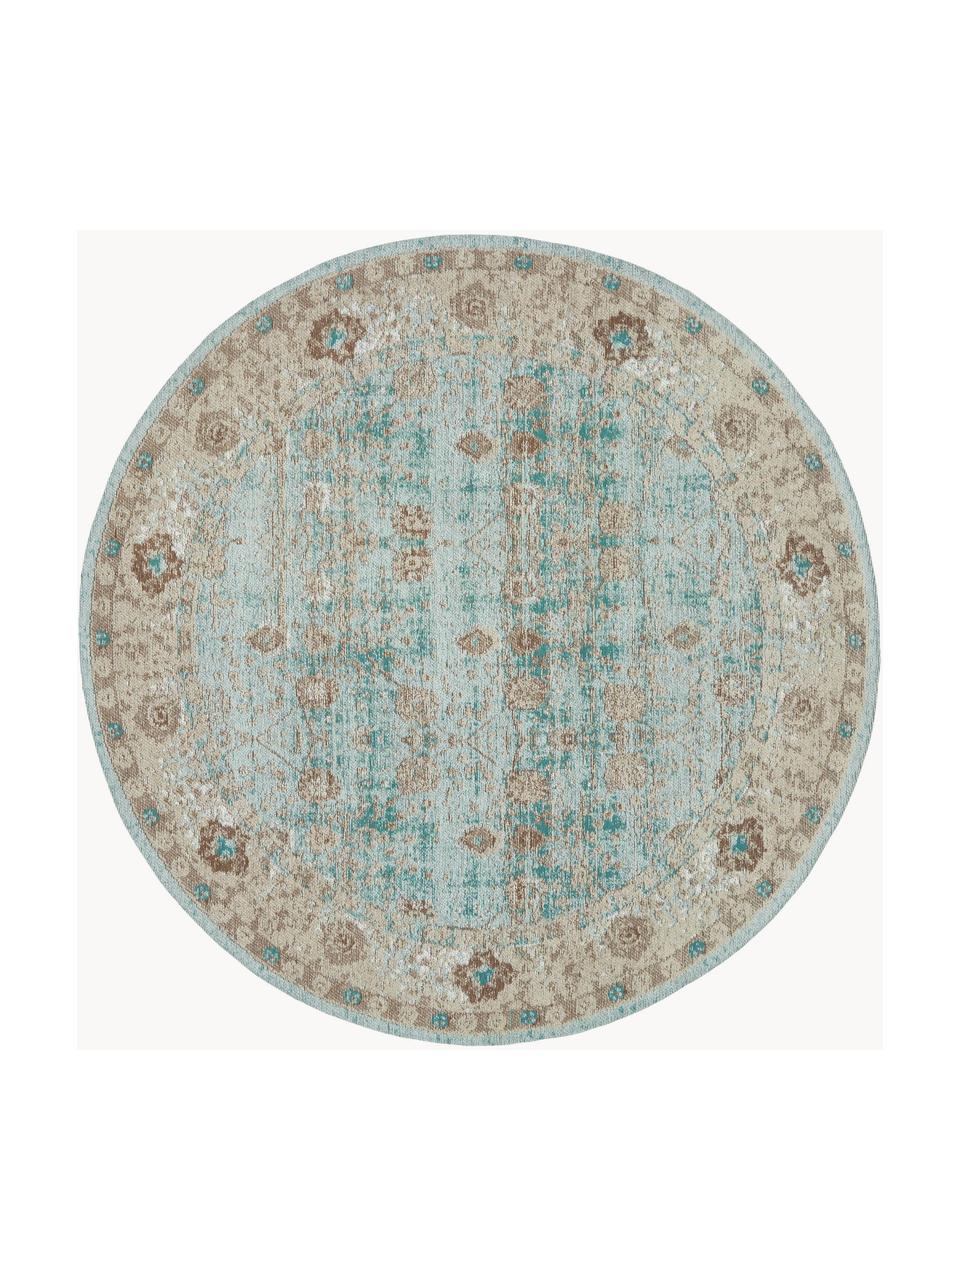 Okrúhly ženilkový koberec Rimini, Tyrkysovozelená, béžová, hnedá, Ø 120 cm (veľkosť S)